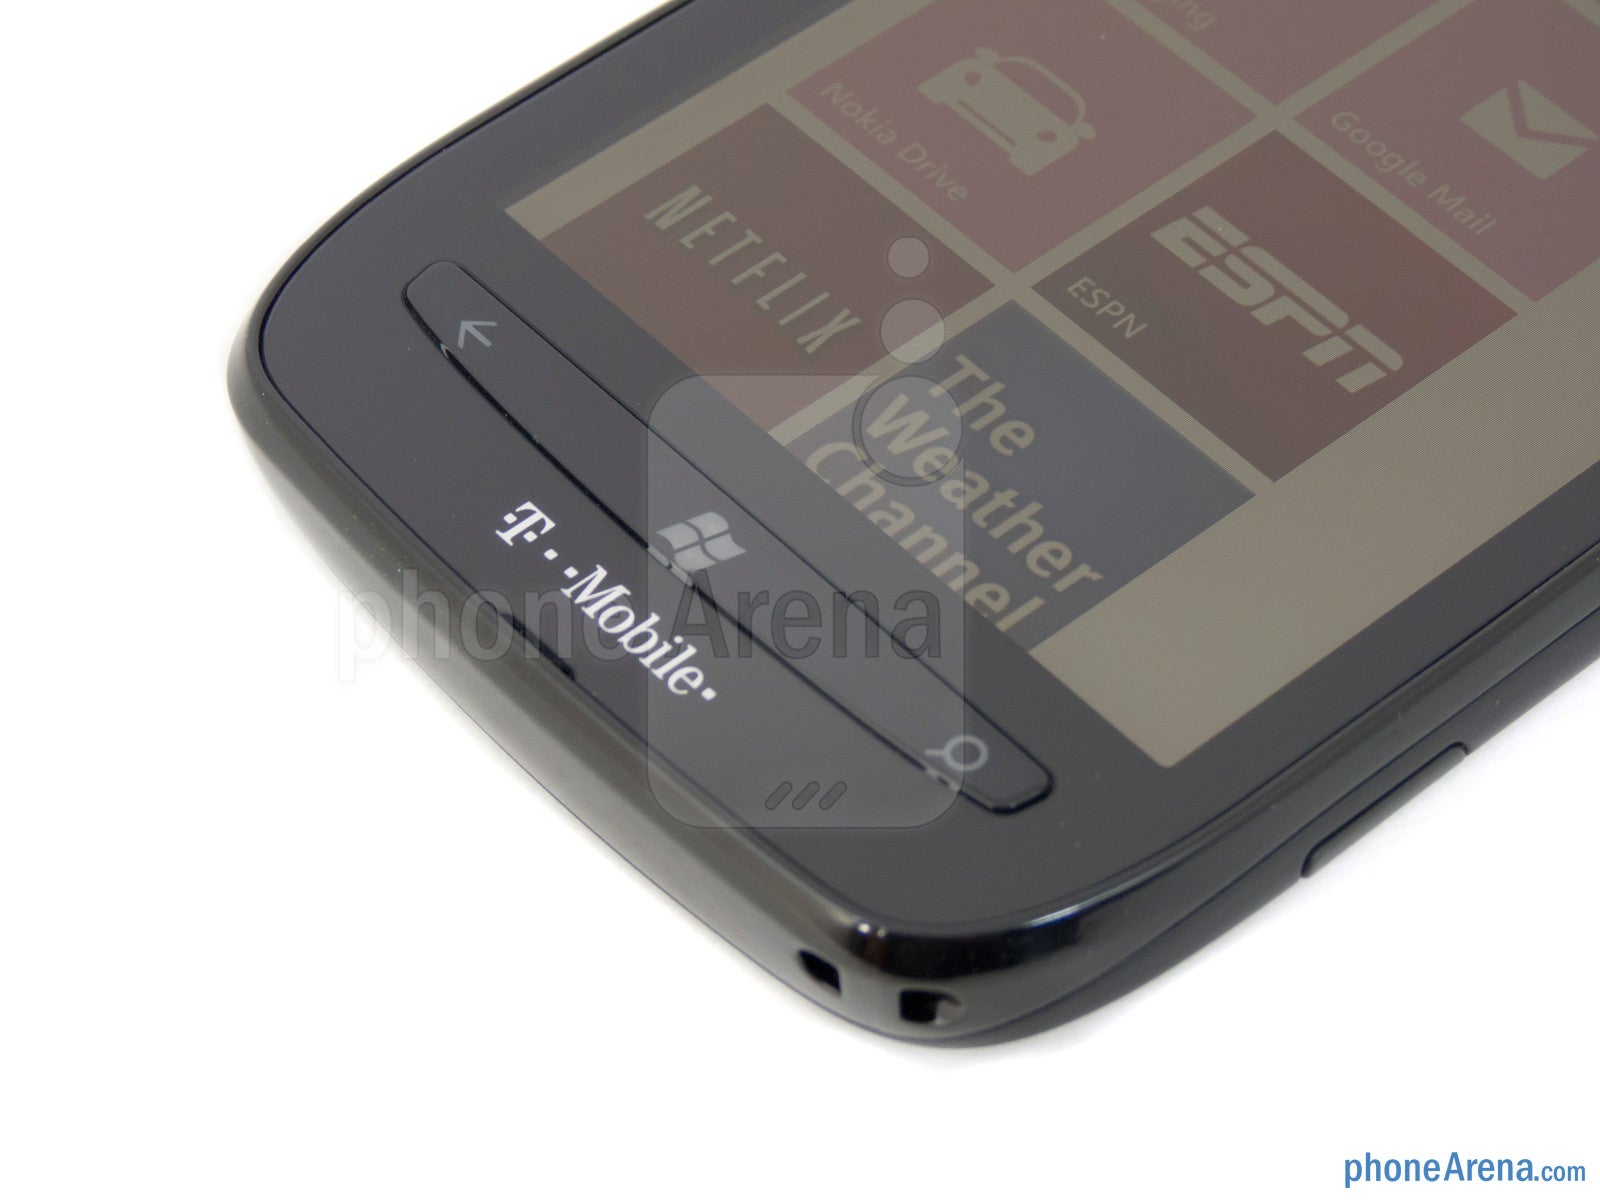 The Nokia Lumia 710 employs physical Windows buttons - Nokia Lumia 710 Review